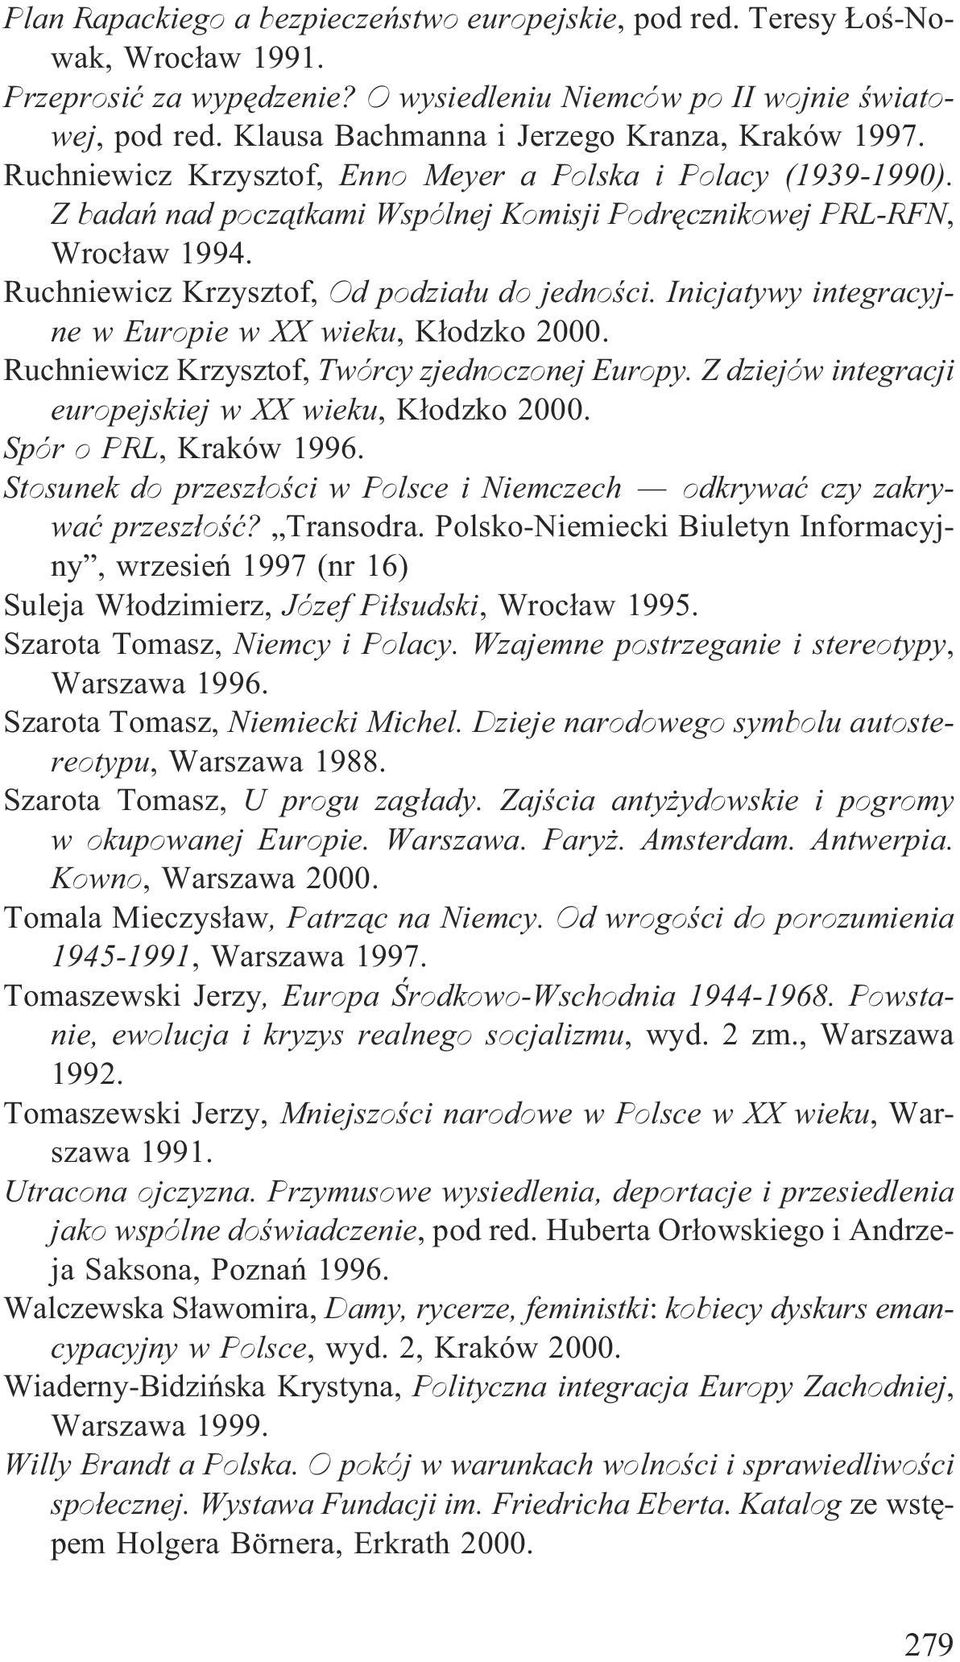 Ruchniewicz Krzysztof, Od podzia³u do jednoœci. Inicjatywy integracyjne w Europie w XX wieku, K³odzko 2000. Ruchniewicz Krzysztof, Twórcy zjednoczonej Europy.